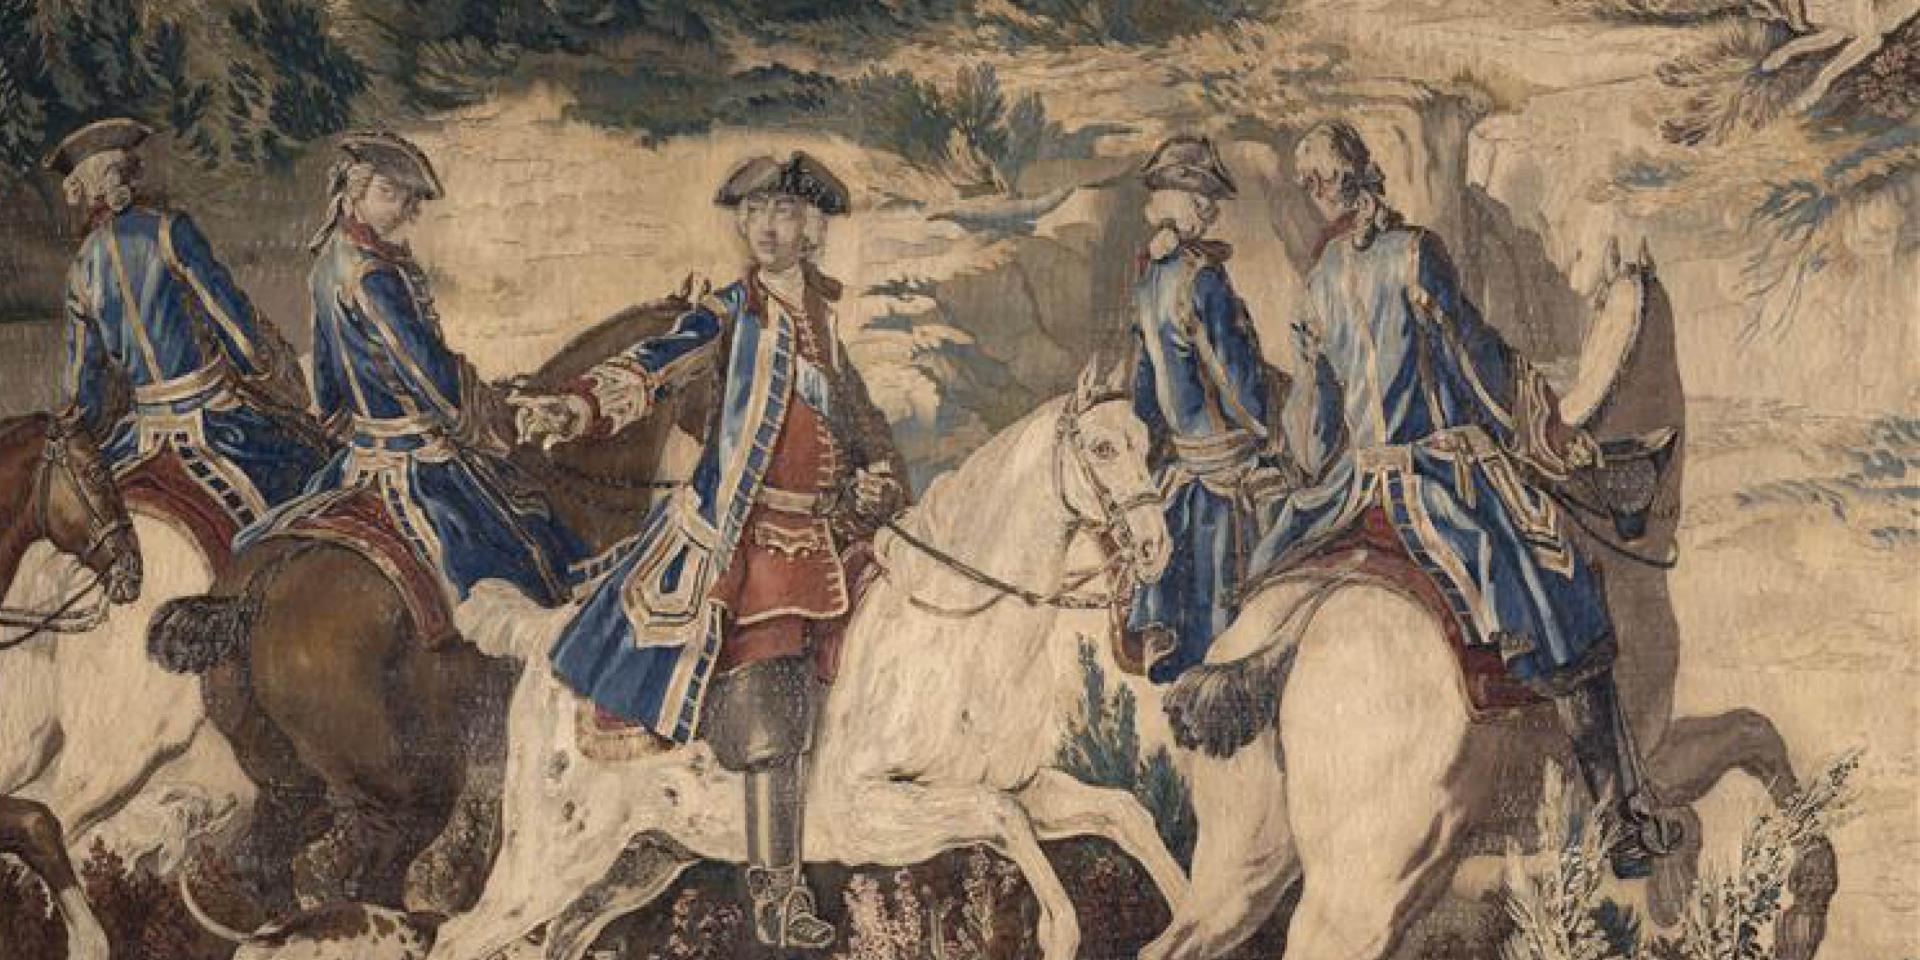 Tenture des chasses de Louis XV : "Les rochers du Franchard, forêt de Fontainebleau".